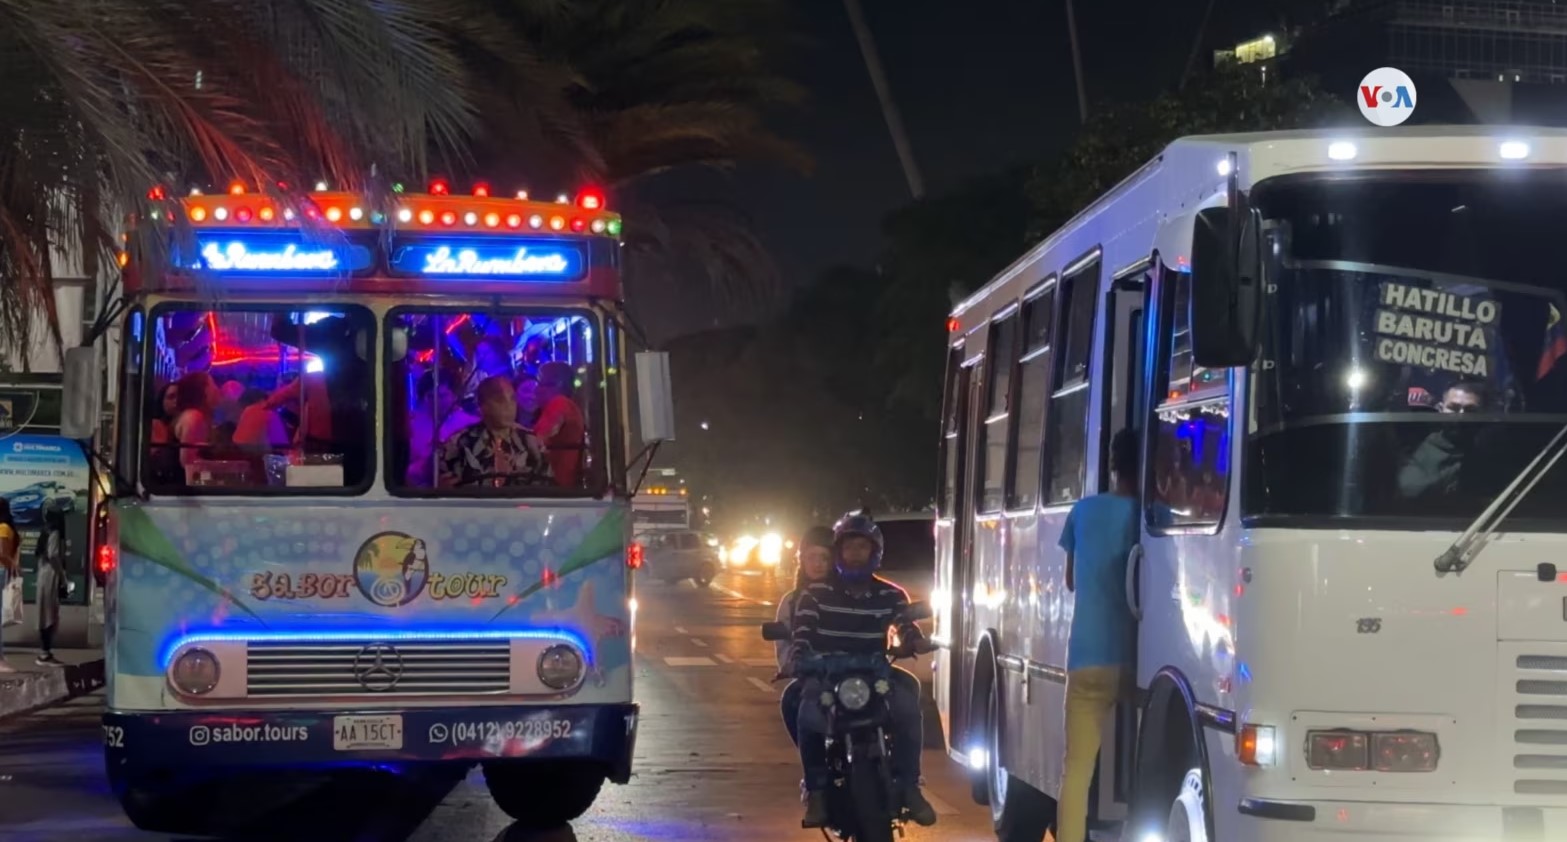 La “chiva rumbera”: fiesta en Caracas a bordo de un bus (Video)